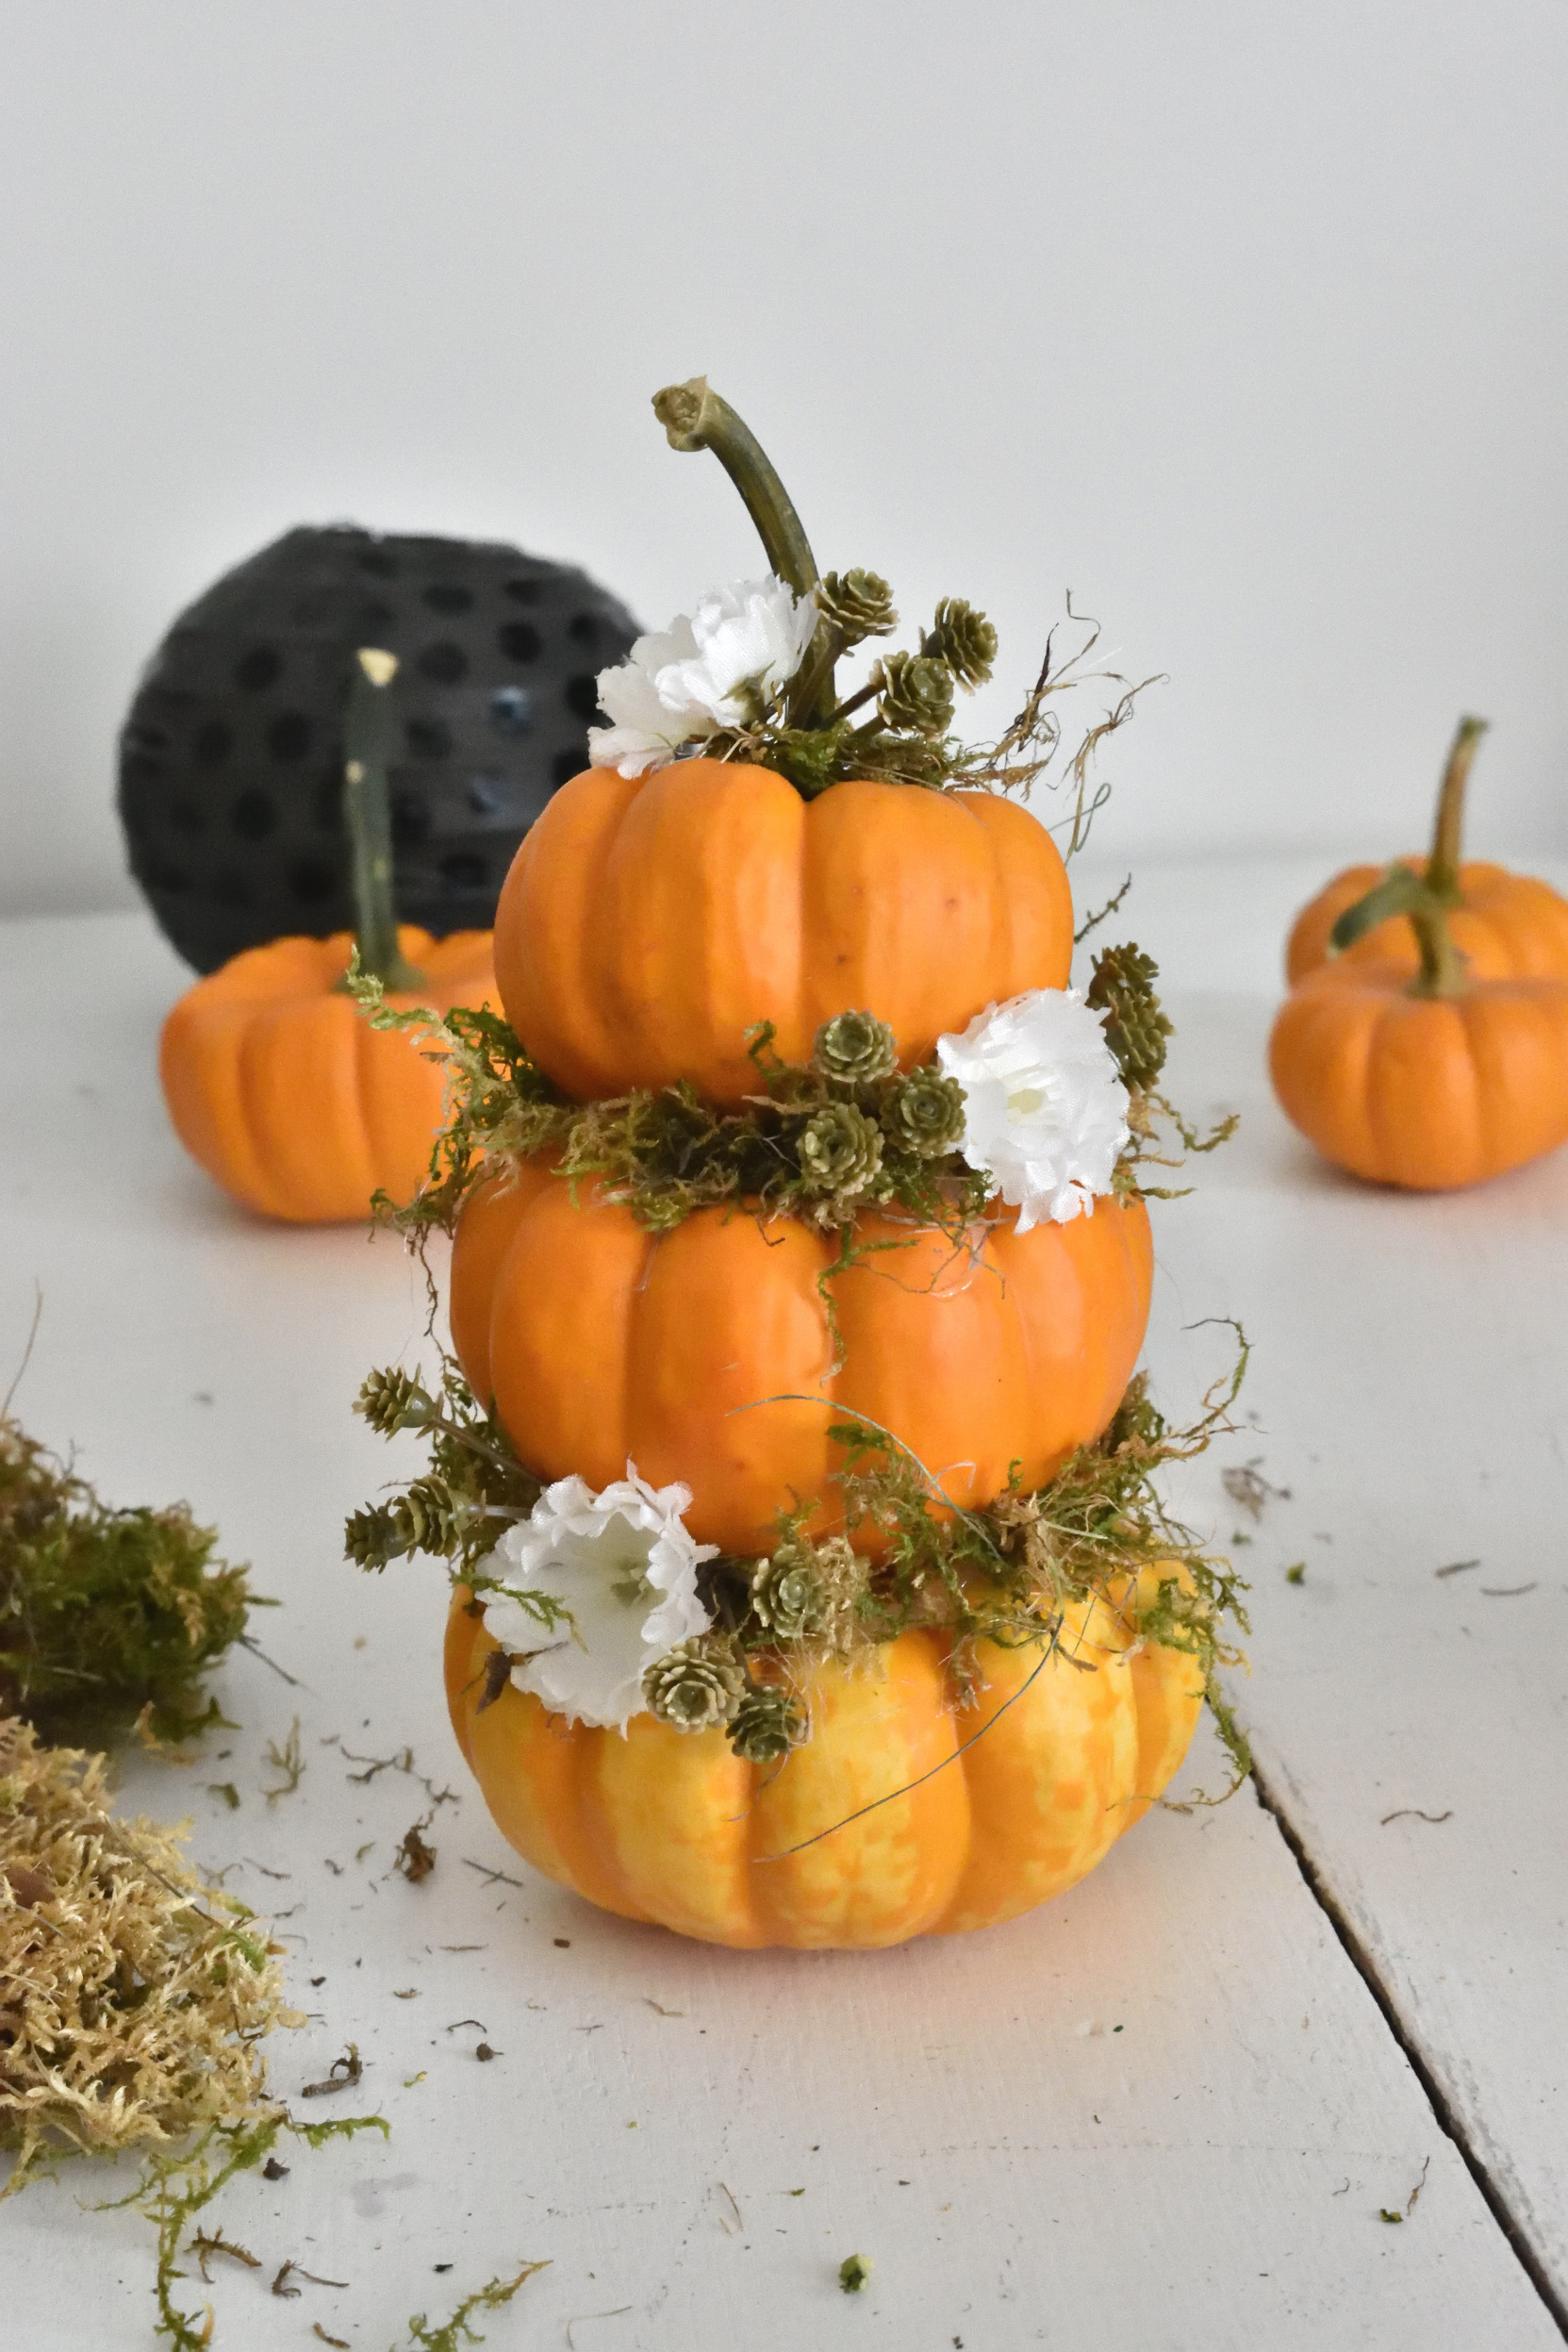 mini pumpkin topiary DIY